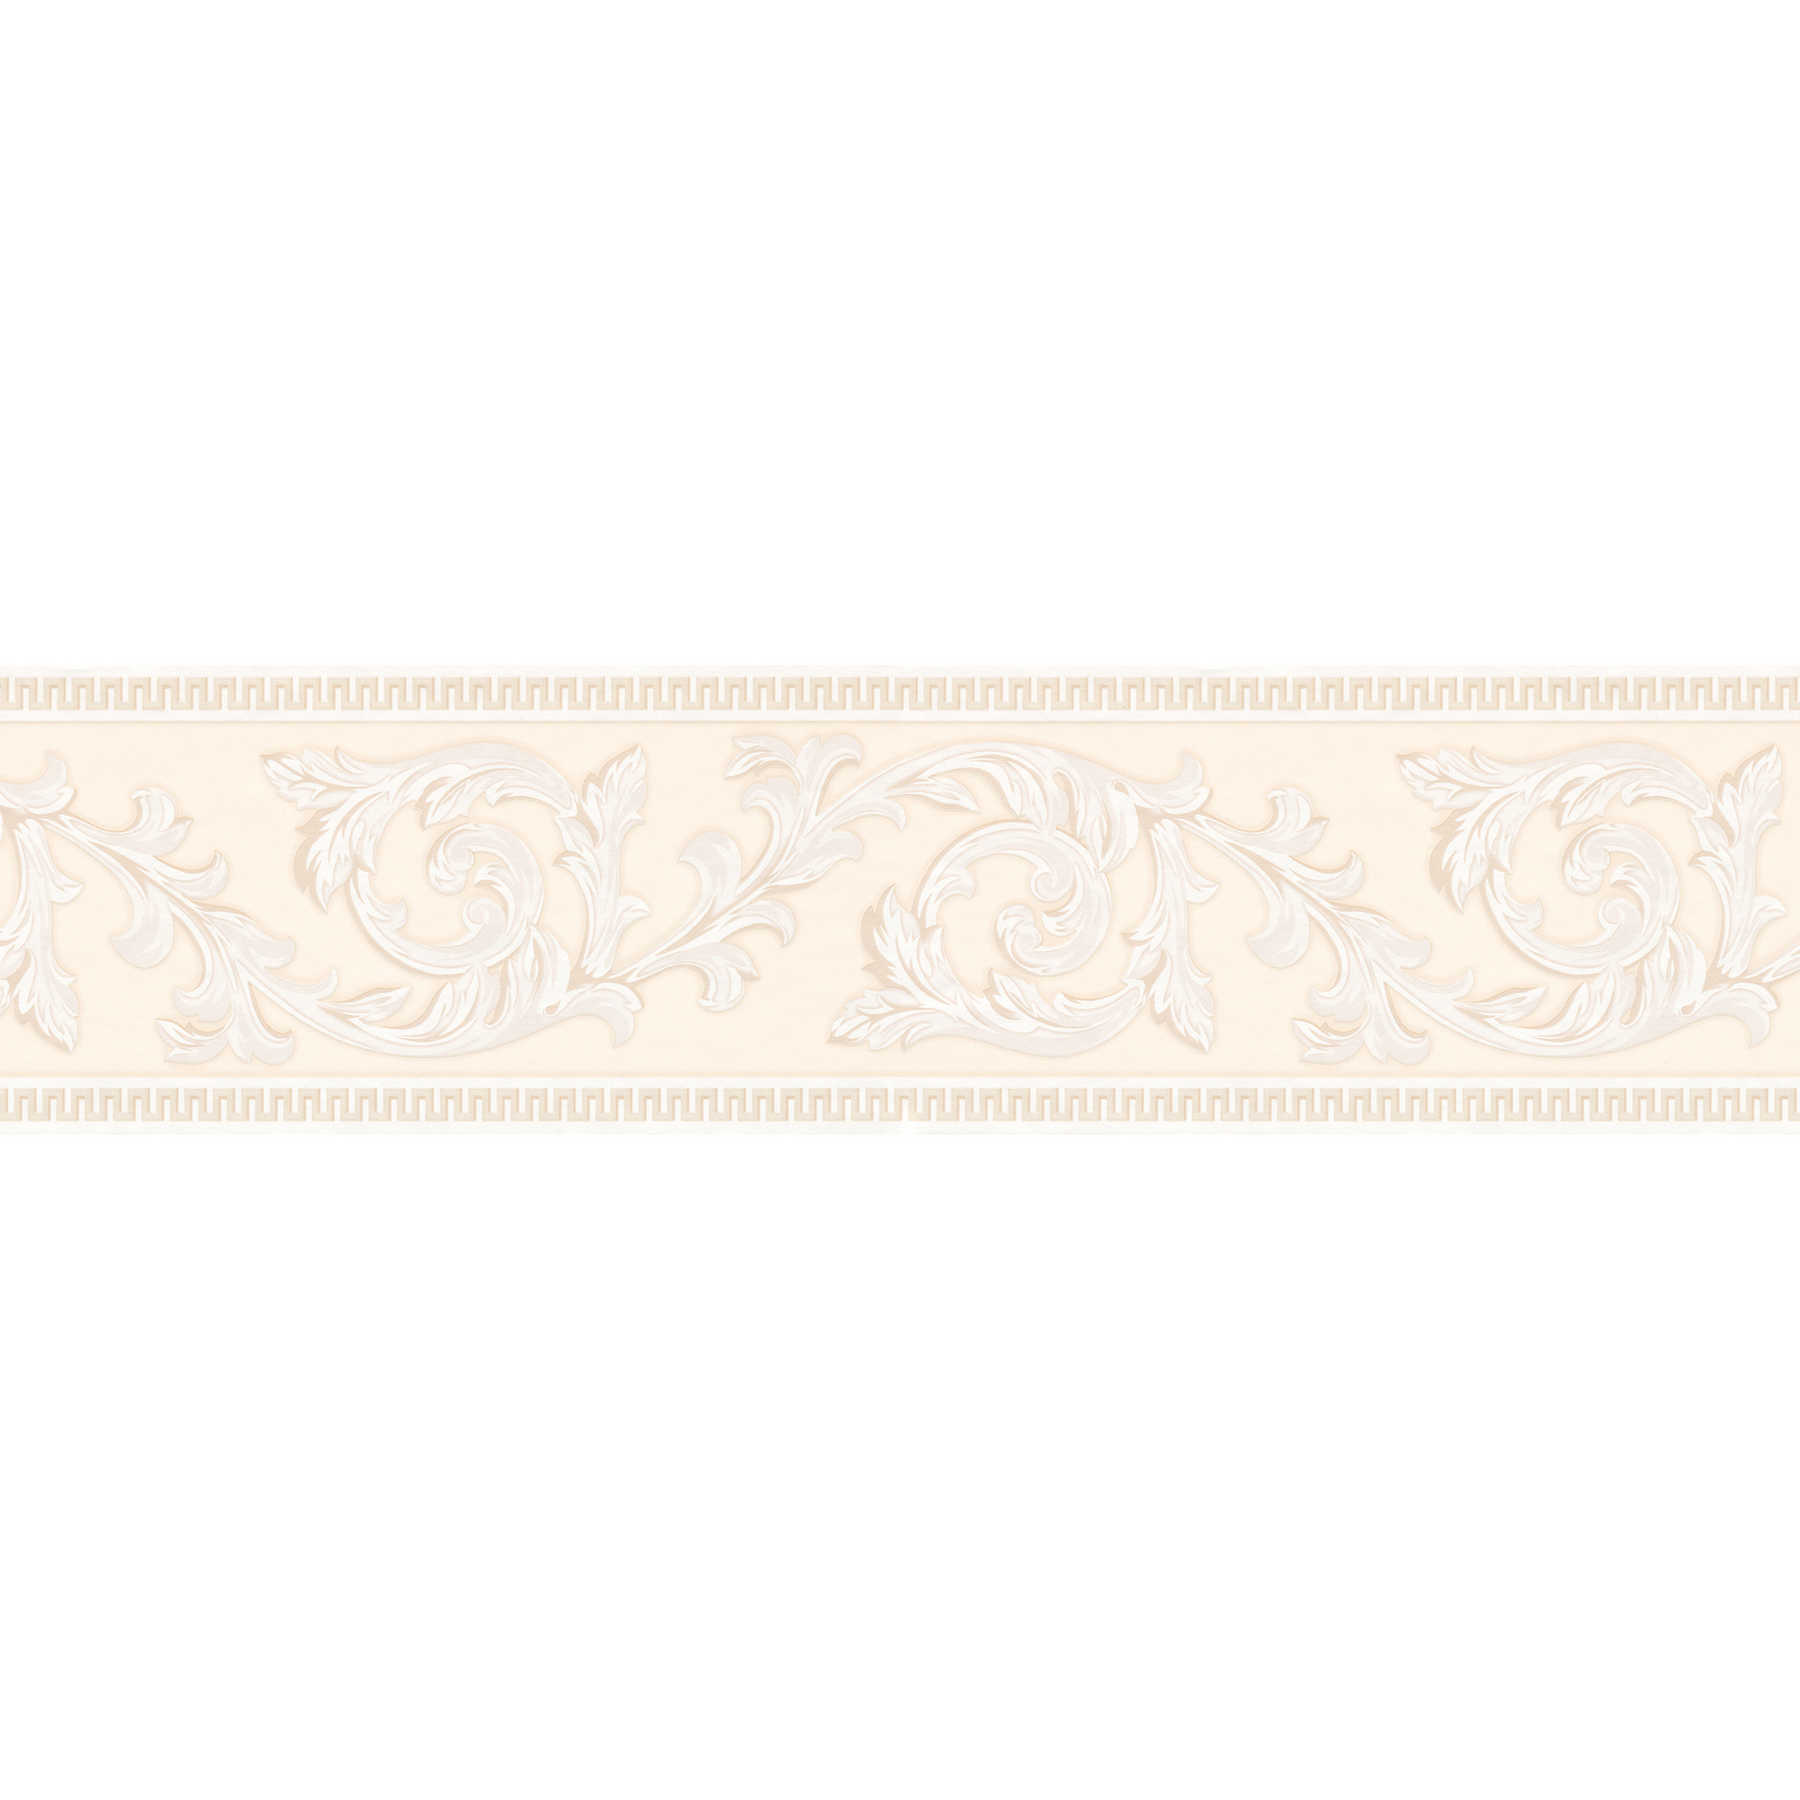 Ornament Bordüre selbstklebend mit klassischem Dekor – Beige
